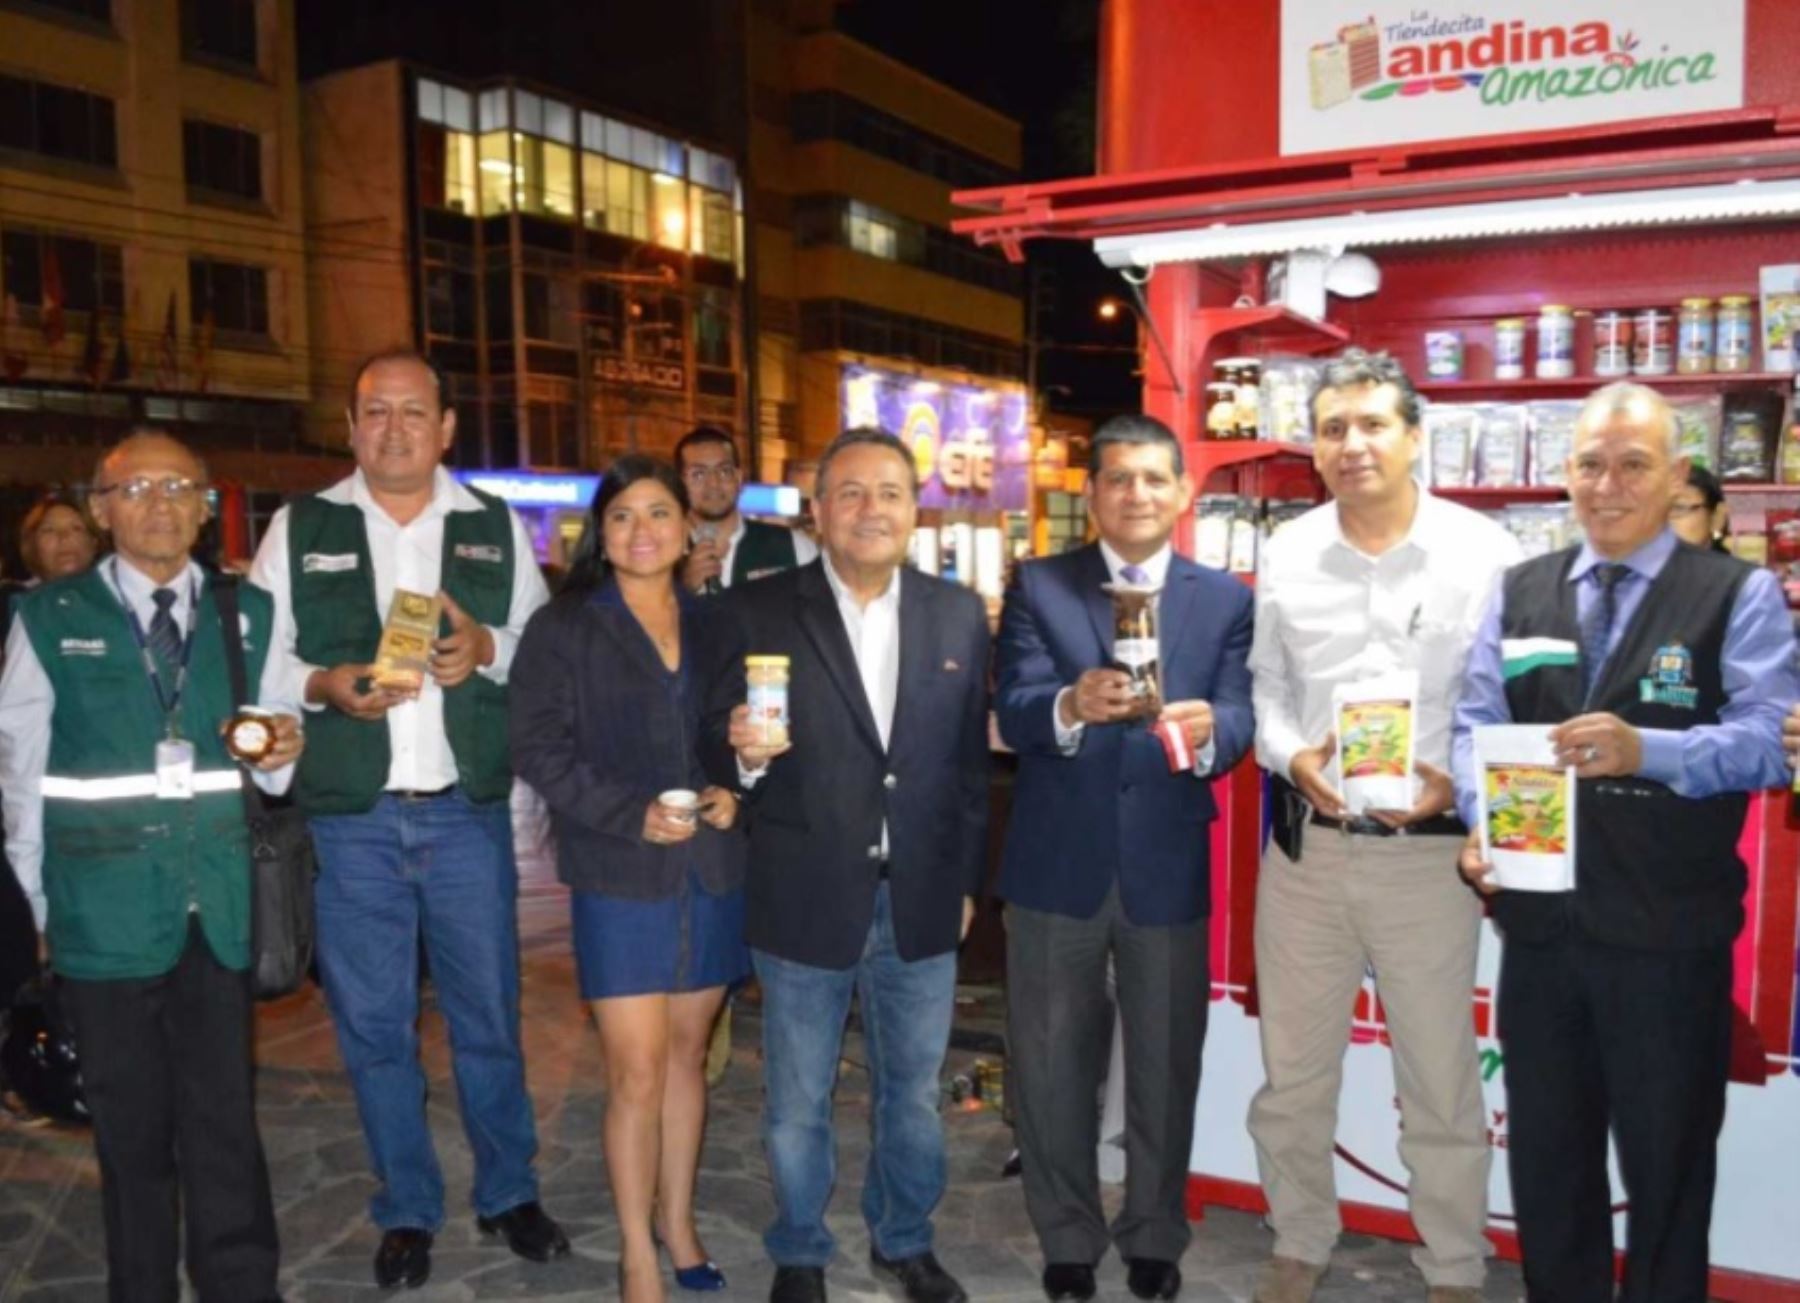 Sierra y Selva Exportadora inauguró un módulo de La Tiendecita Andina Amazónica en la Plaza de Armas de la ciudad de Huánuco, en la cual se ofrecerán productos nutritivos con valor agregado, producidos por pequeños productores de la zona y de otras regiones.